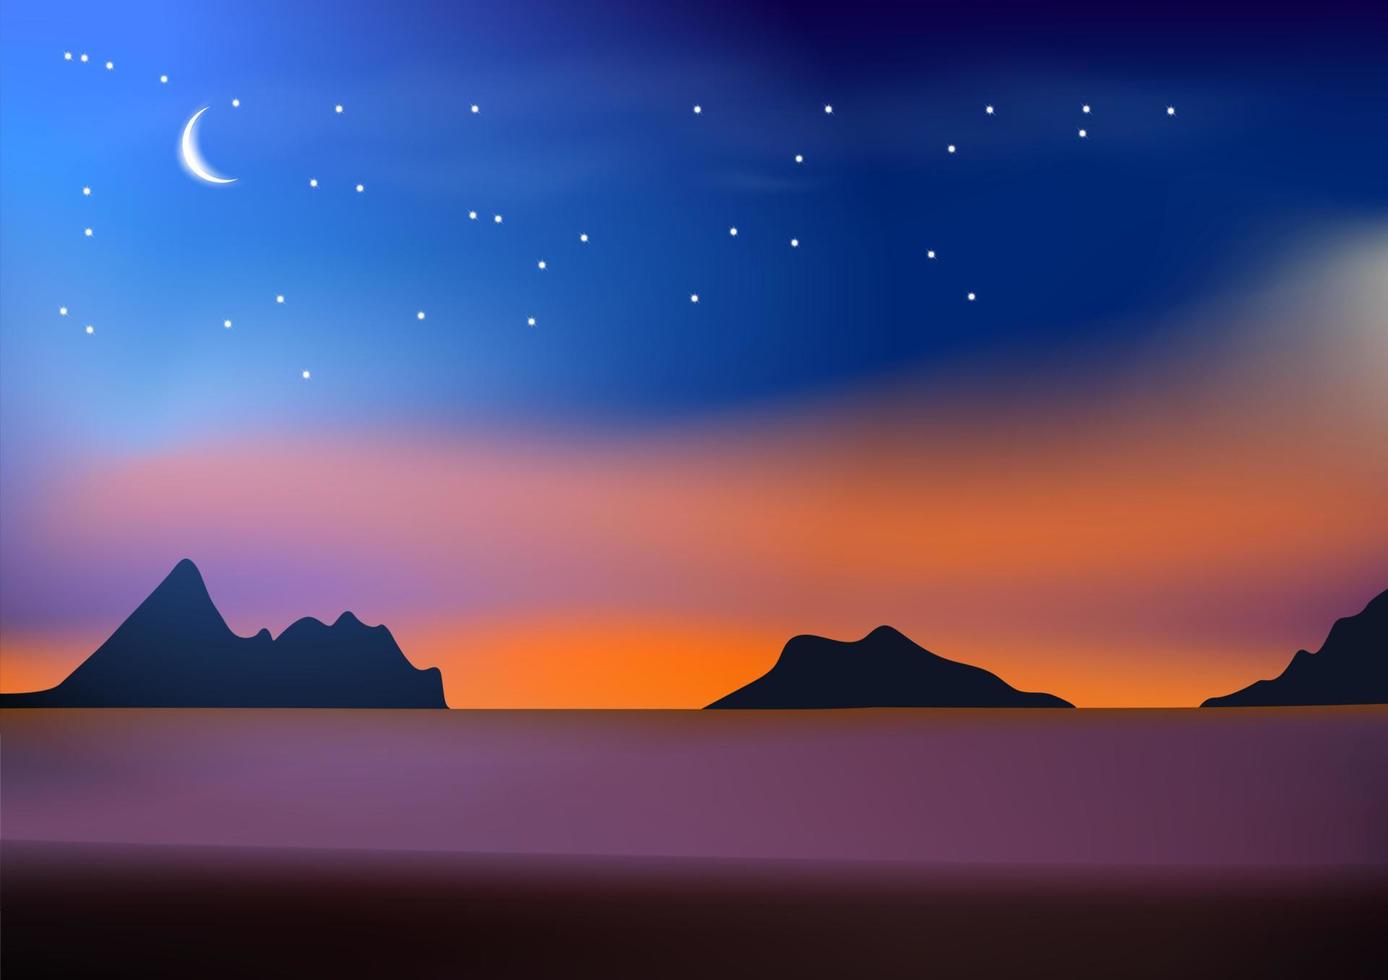 grafik ritning landskap strand havsutsikt med månhimmel och stjärna och skymning efter solnedgång vektorillustration vektor